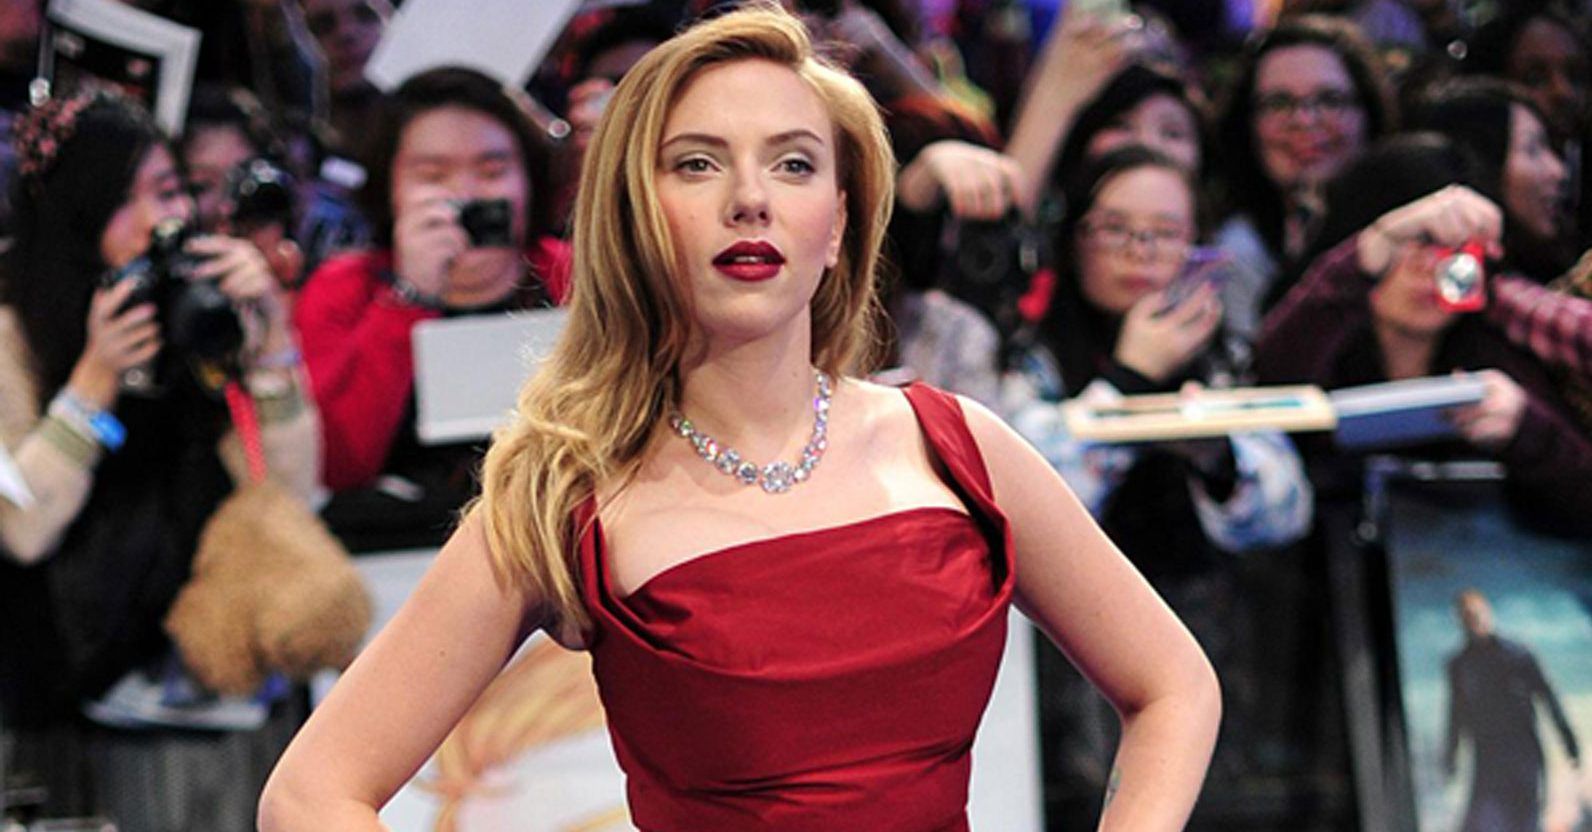 Aqui está o que Scarlett Johansson, do MCU, disse sobre ser magra em Hollywood